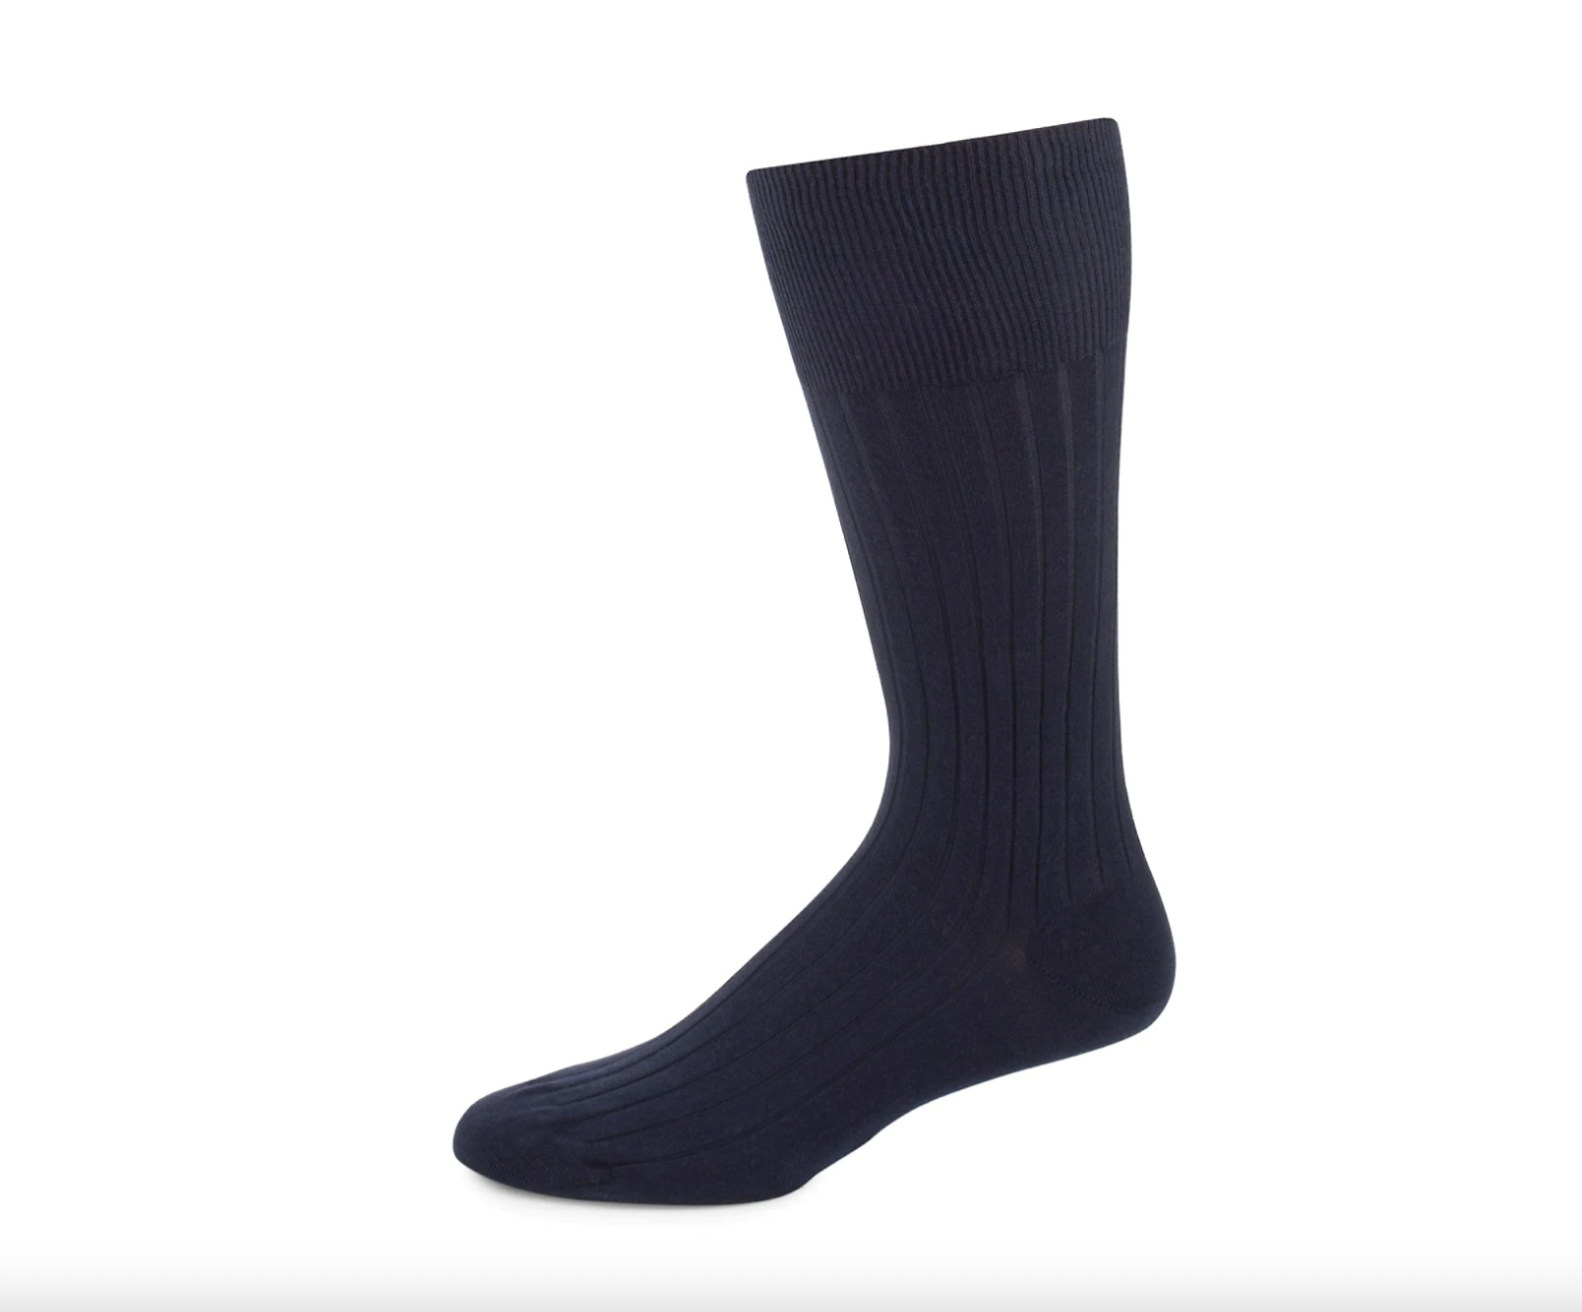 21 Best Dress Socks for Men 2023